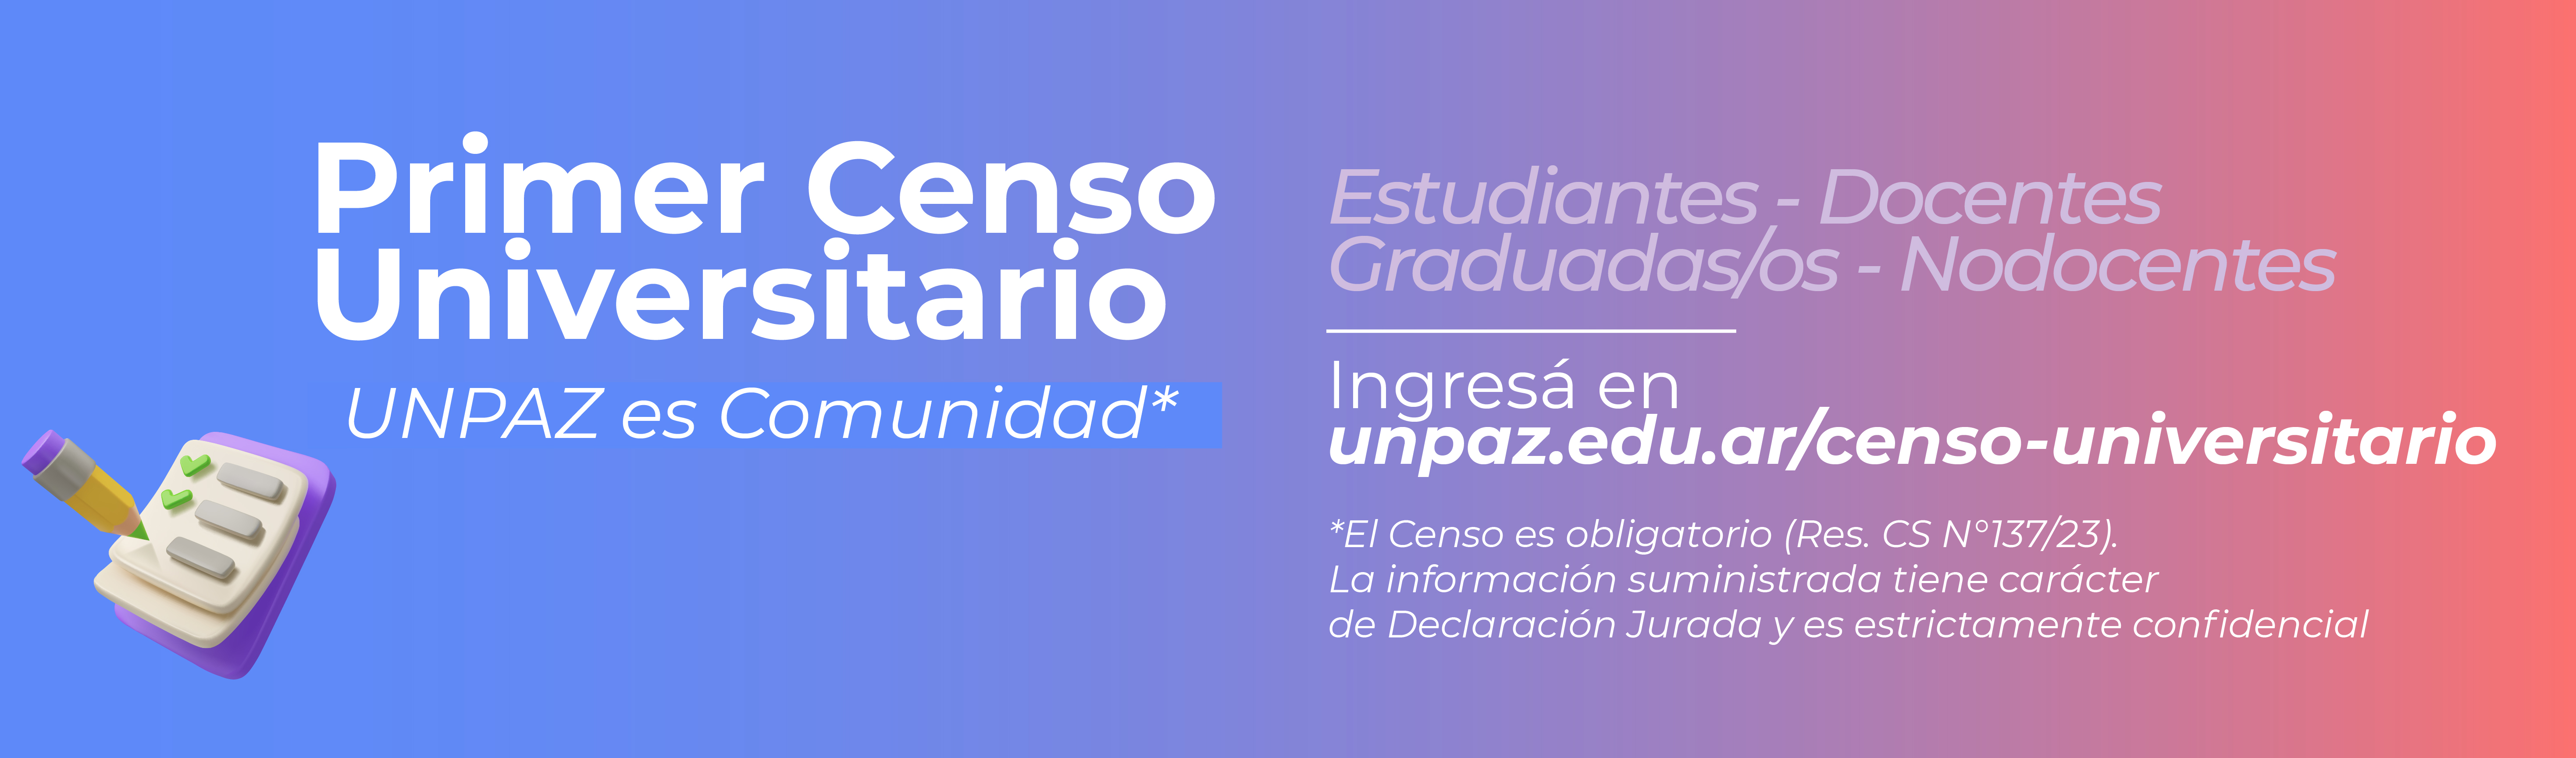 Primer Censo Universitario “UNPAZ es comunidad”